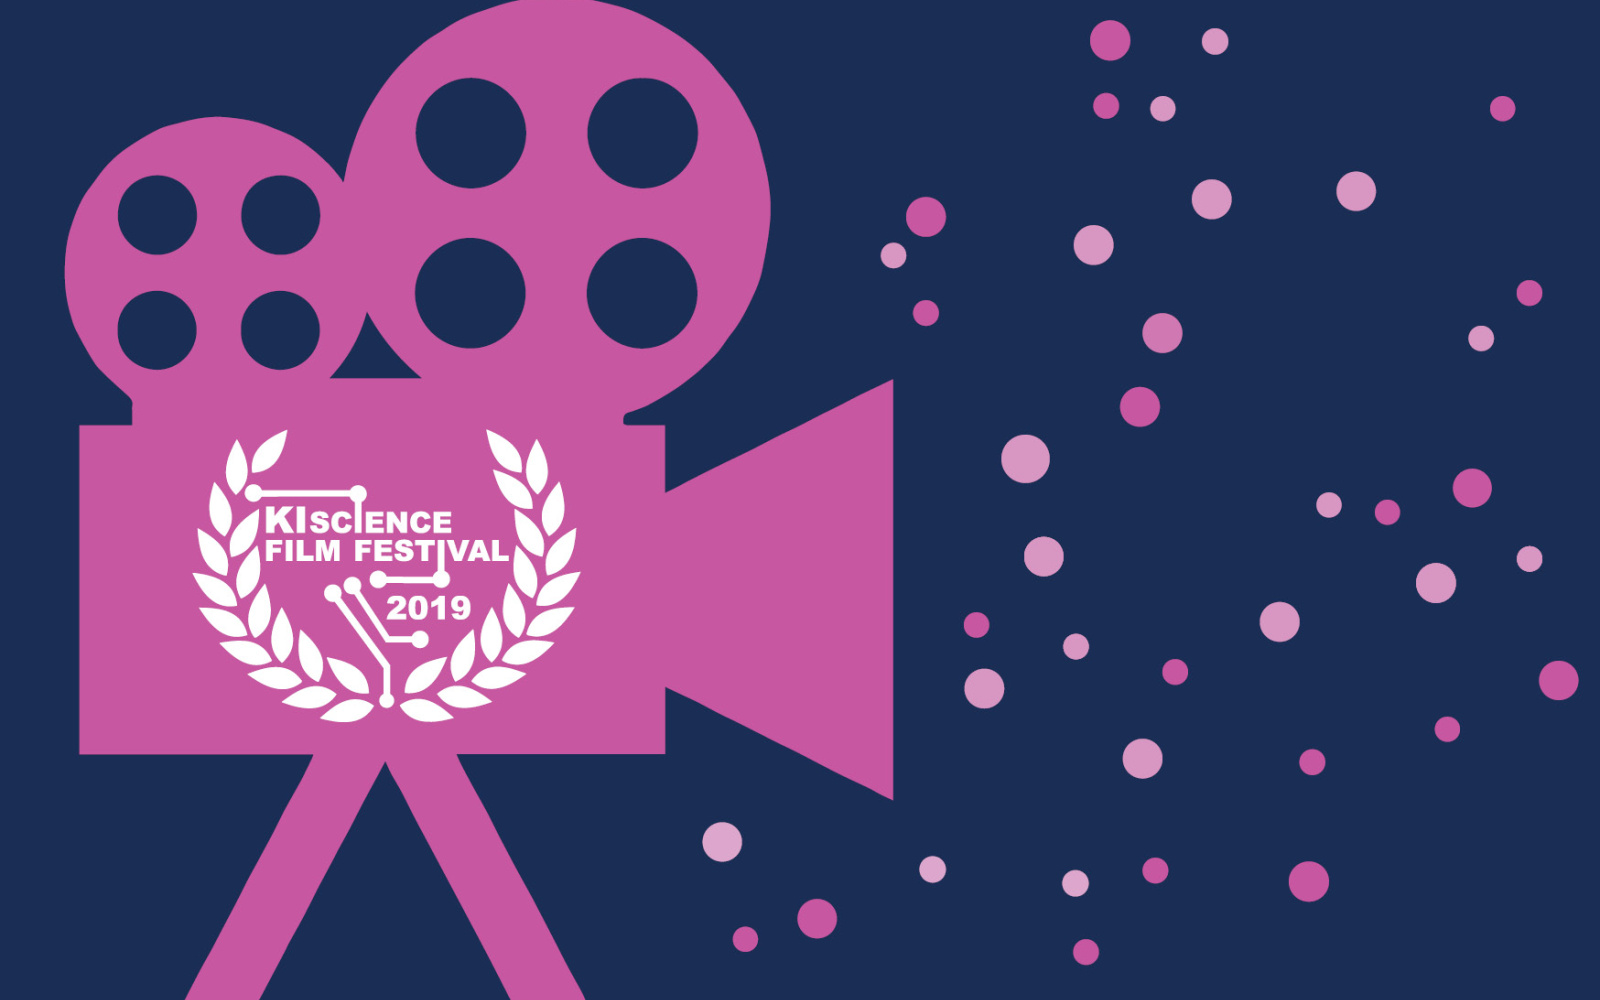 Graphik des KI Science Film Festivals 2019 mit einem rosa Kamera Icon vor einem dunklen Hintergrund.